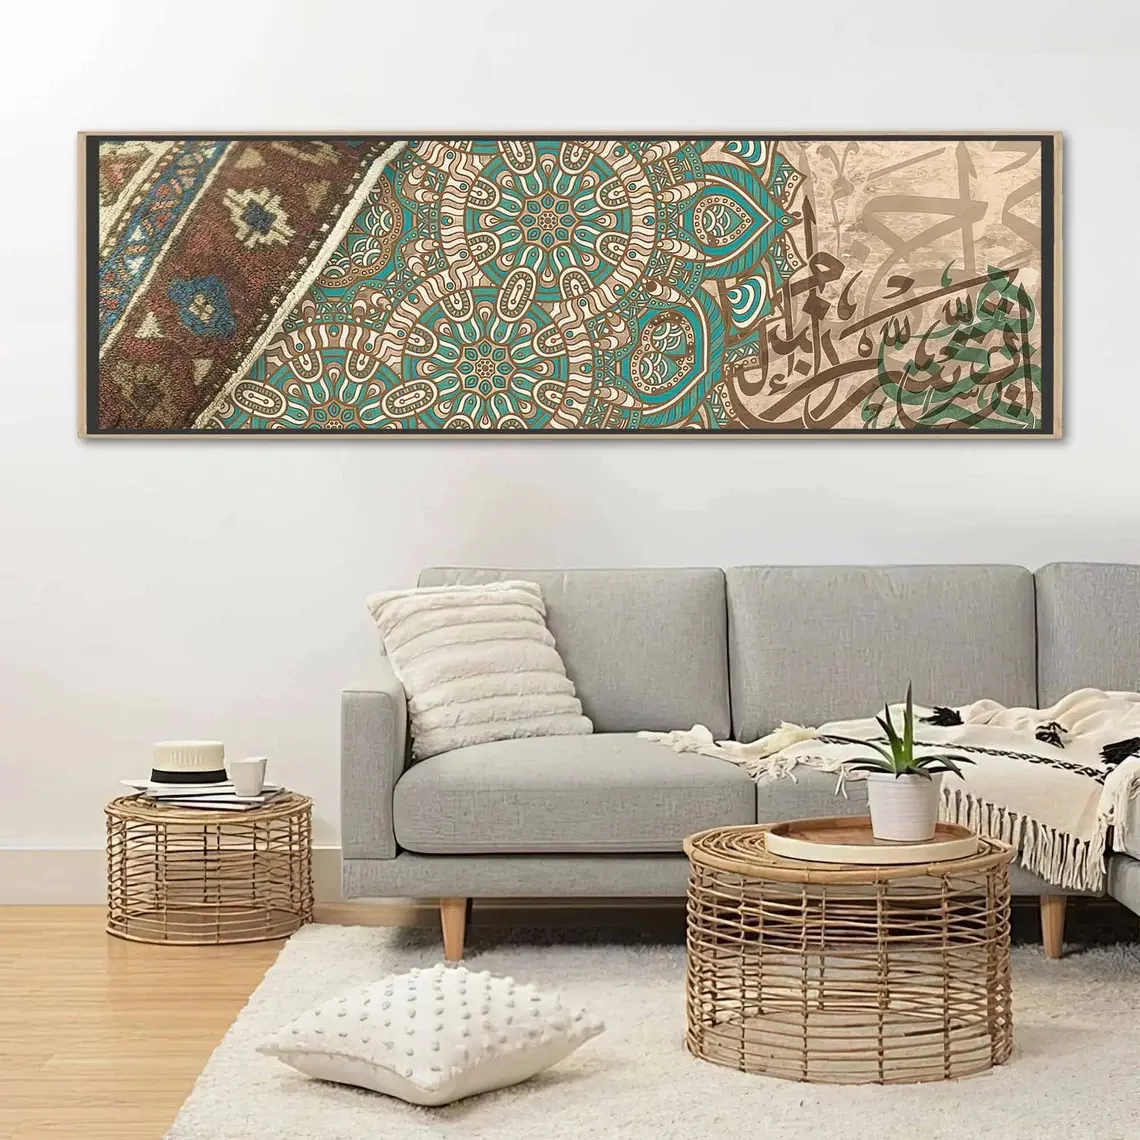 HD tuval baskı İslami desen ve türk halı duvar sanat geometrik desen resimleri çerçeveli ev dekorasyon